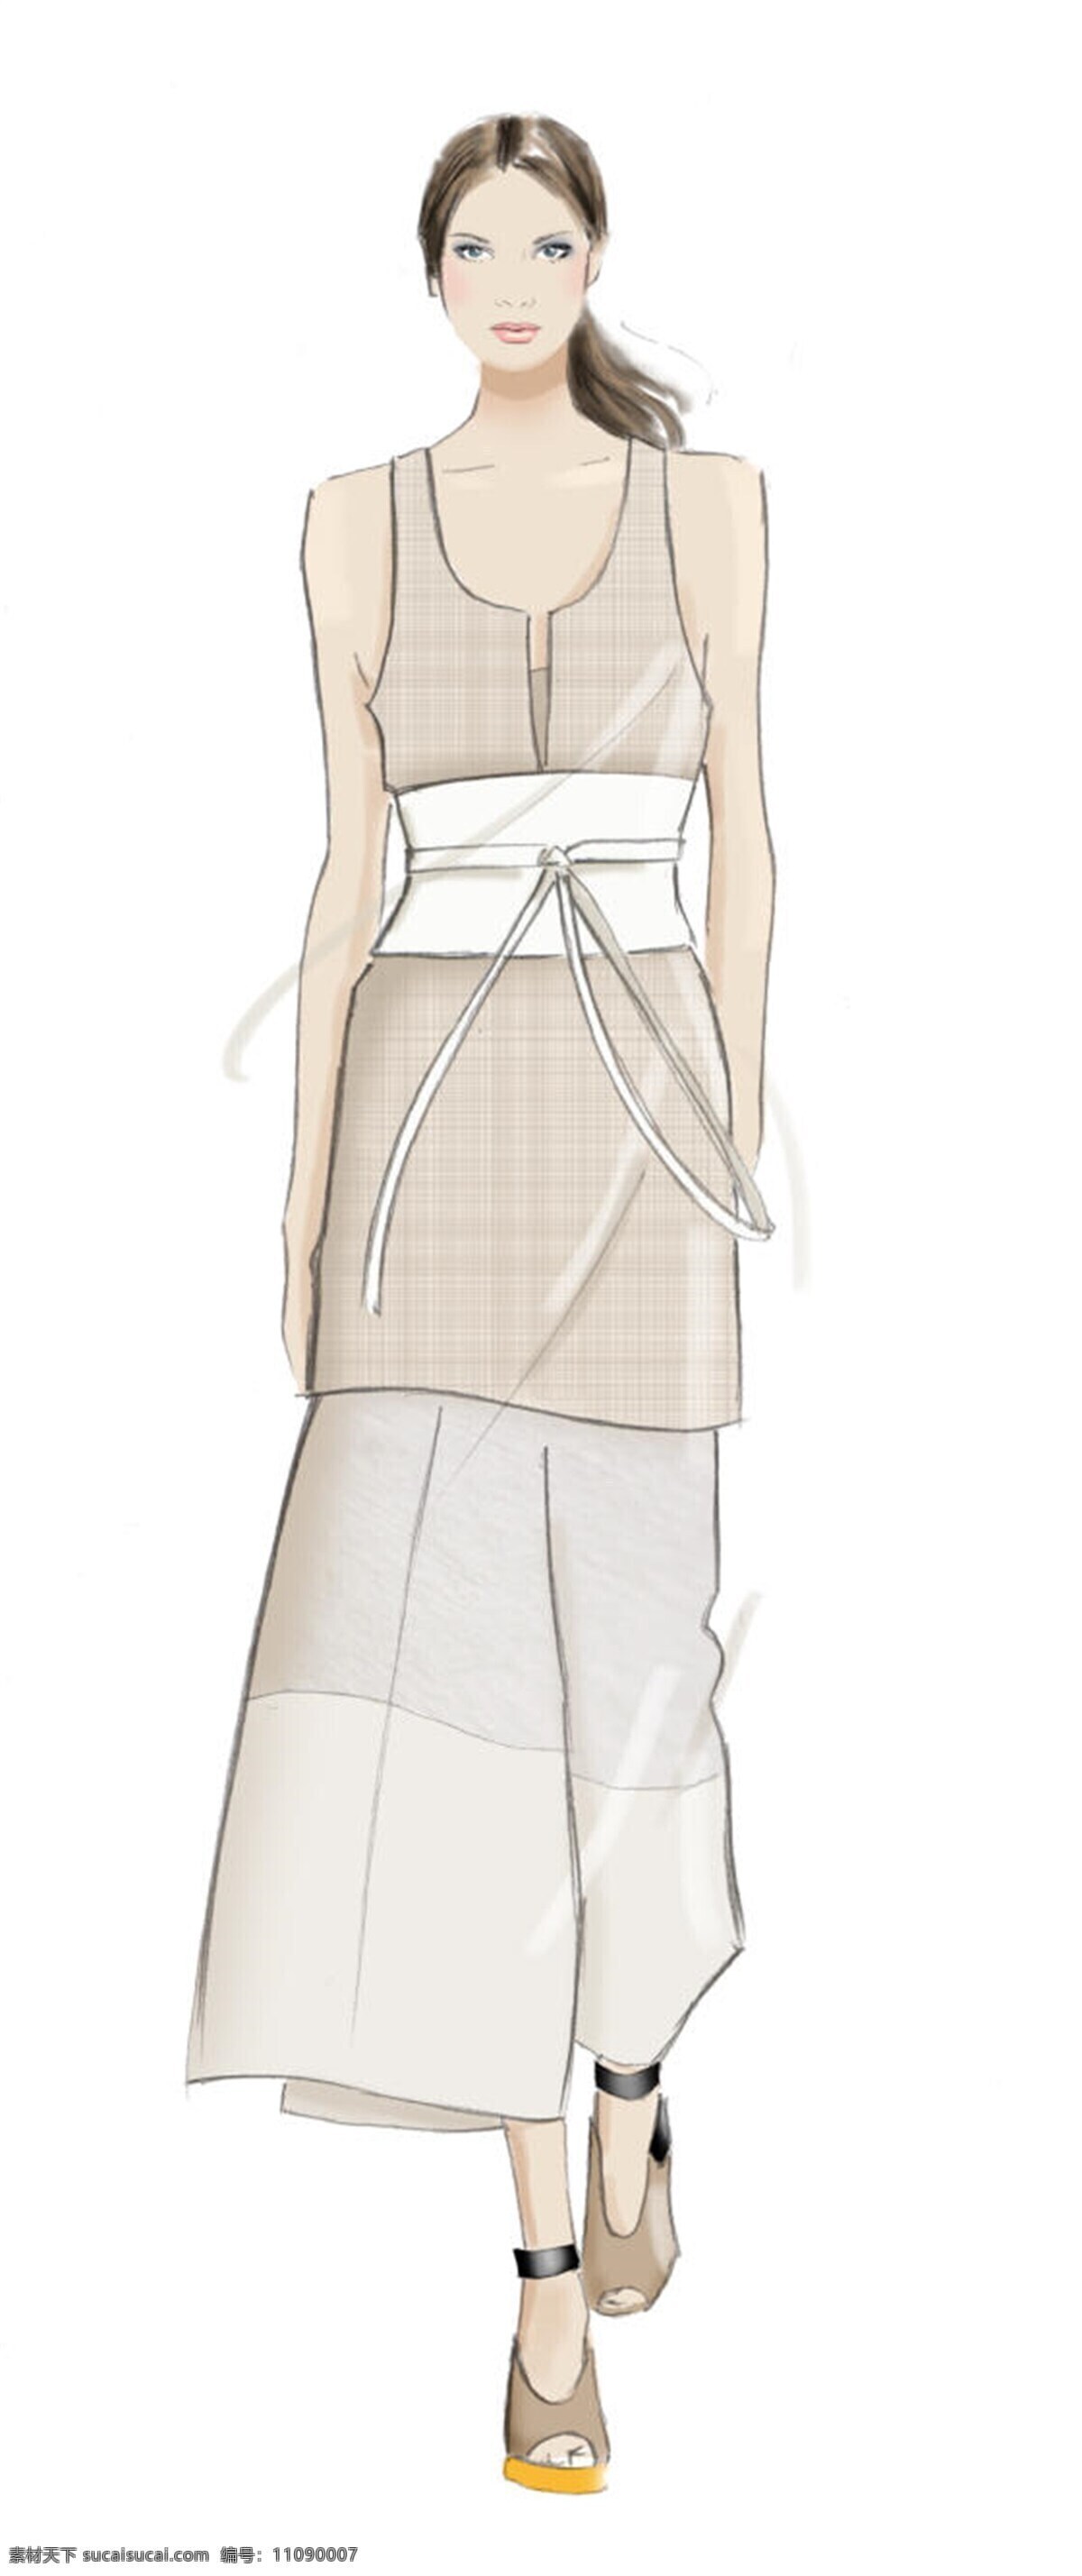 白色腰带 服装设计 宽松裤子 女装 无袖上衣 简约 时尚 无袖 短袖 效果图